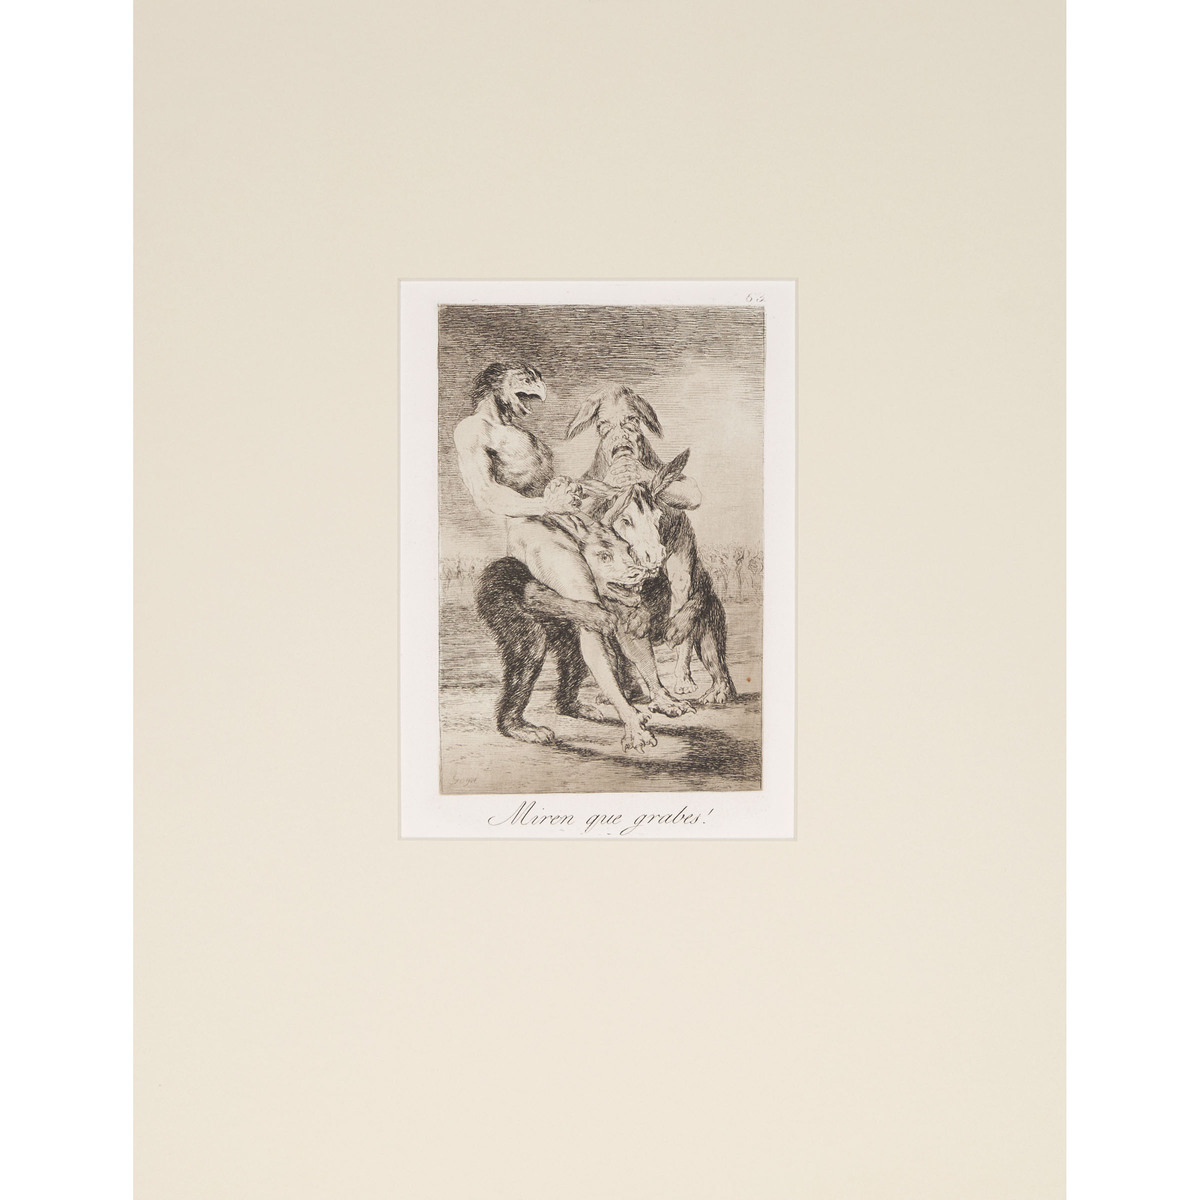 Francisco José de Goya y Lucientes (1746-1828), LOS CAPRICHOS, CA. 1855-1878 [D. 40-111; H. 38-109], - Image 44 of 55